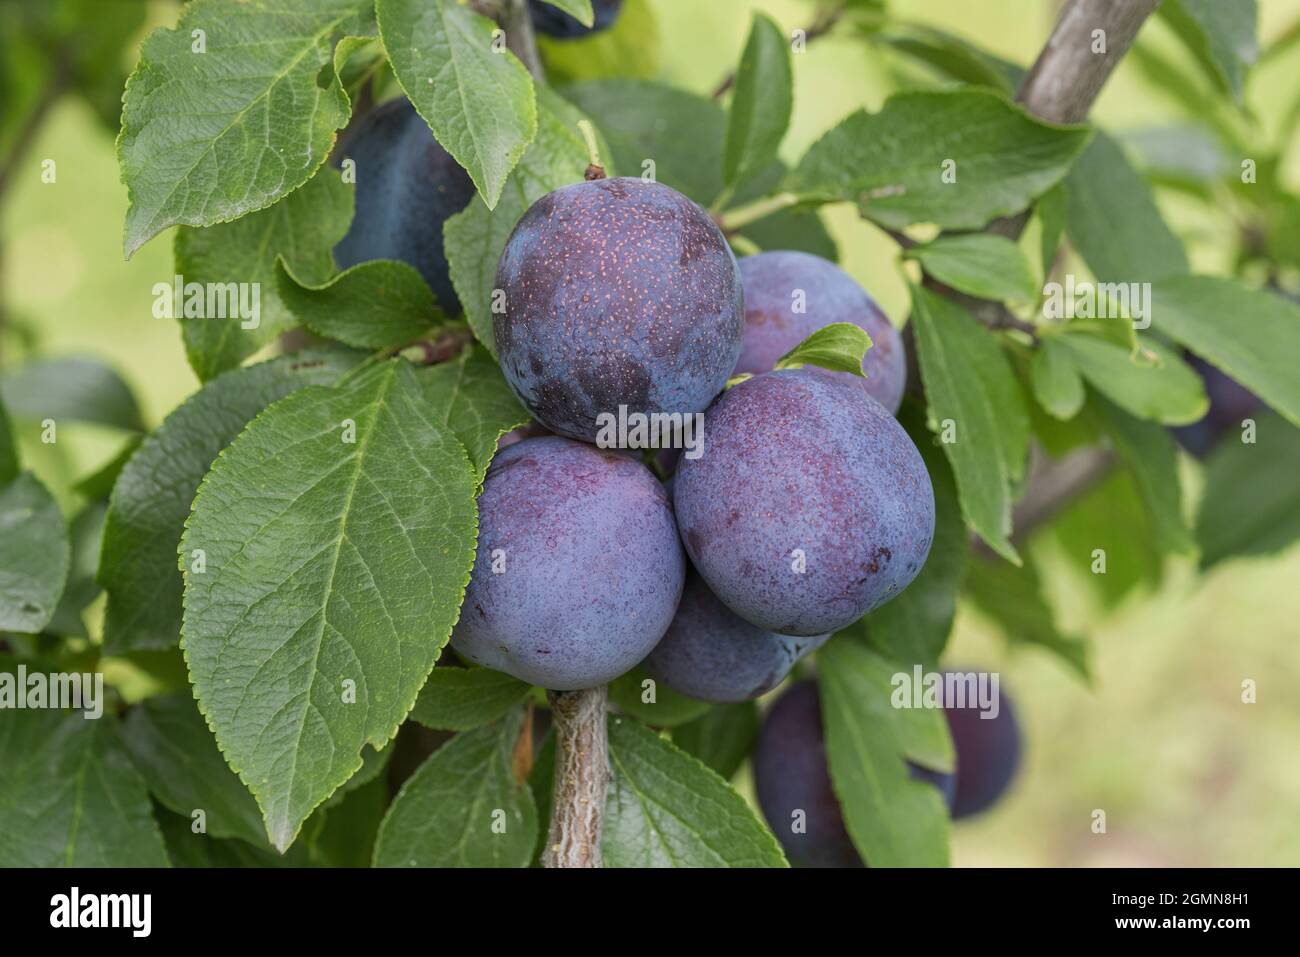 European plum (Prunus domestica 'Anna Spaeth', Prunus domestica Anna Spaeth), plums on a twig, cultivar Anna Spaeth Stock Photo